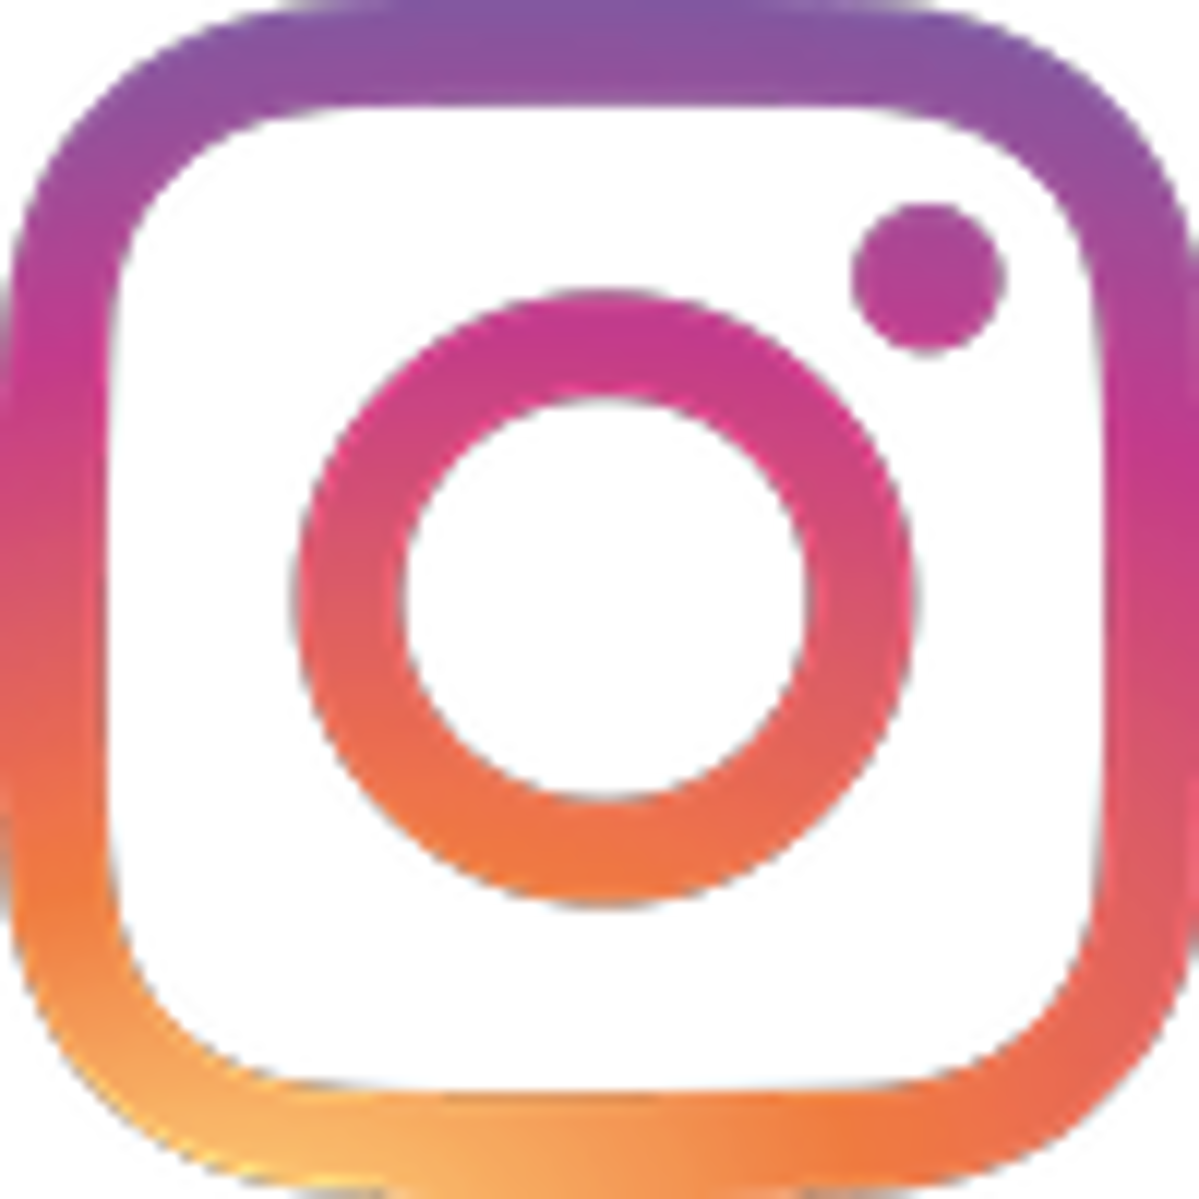 Das logo von Instagram, eine Handy-Kamera gezeichnet mit rosa orangen auf weißen Hintergrund.